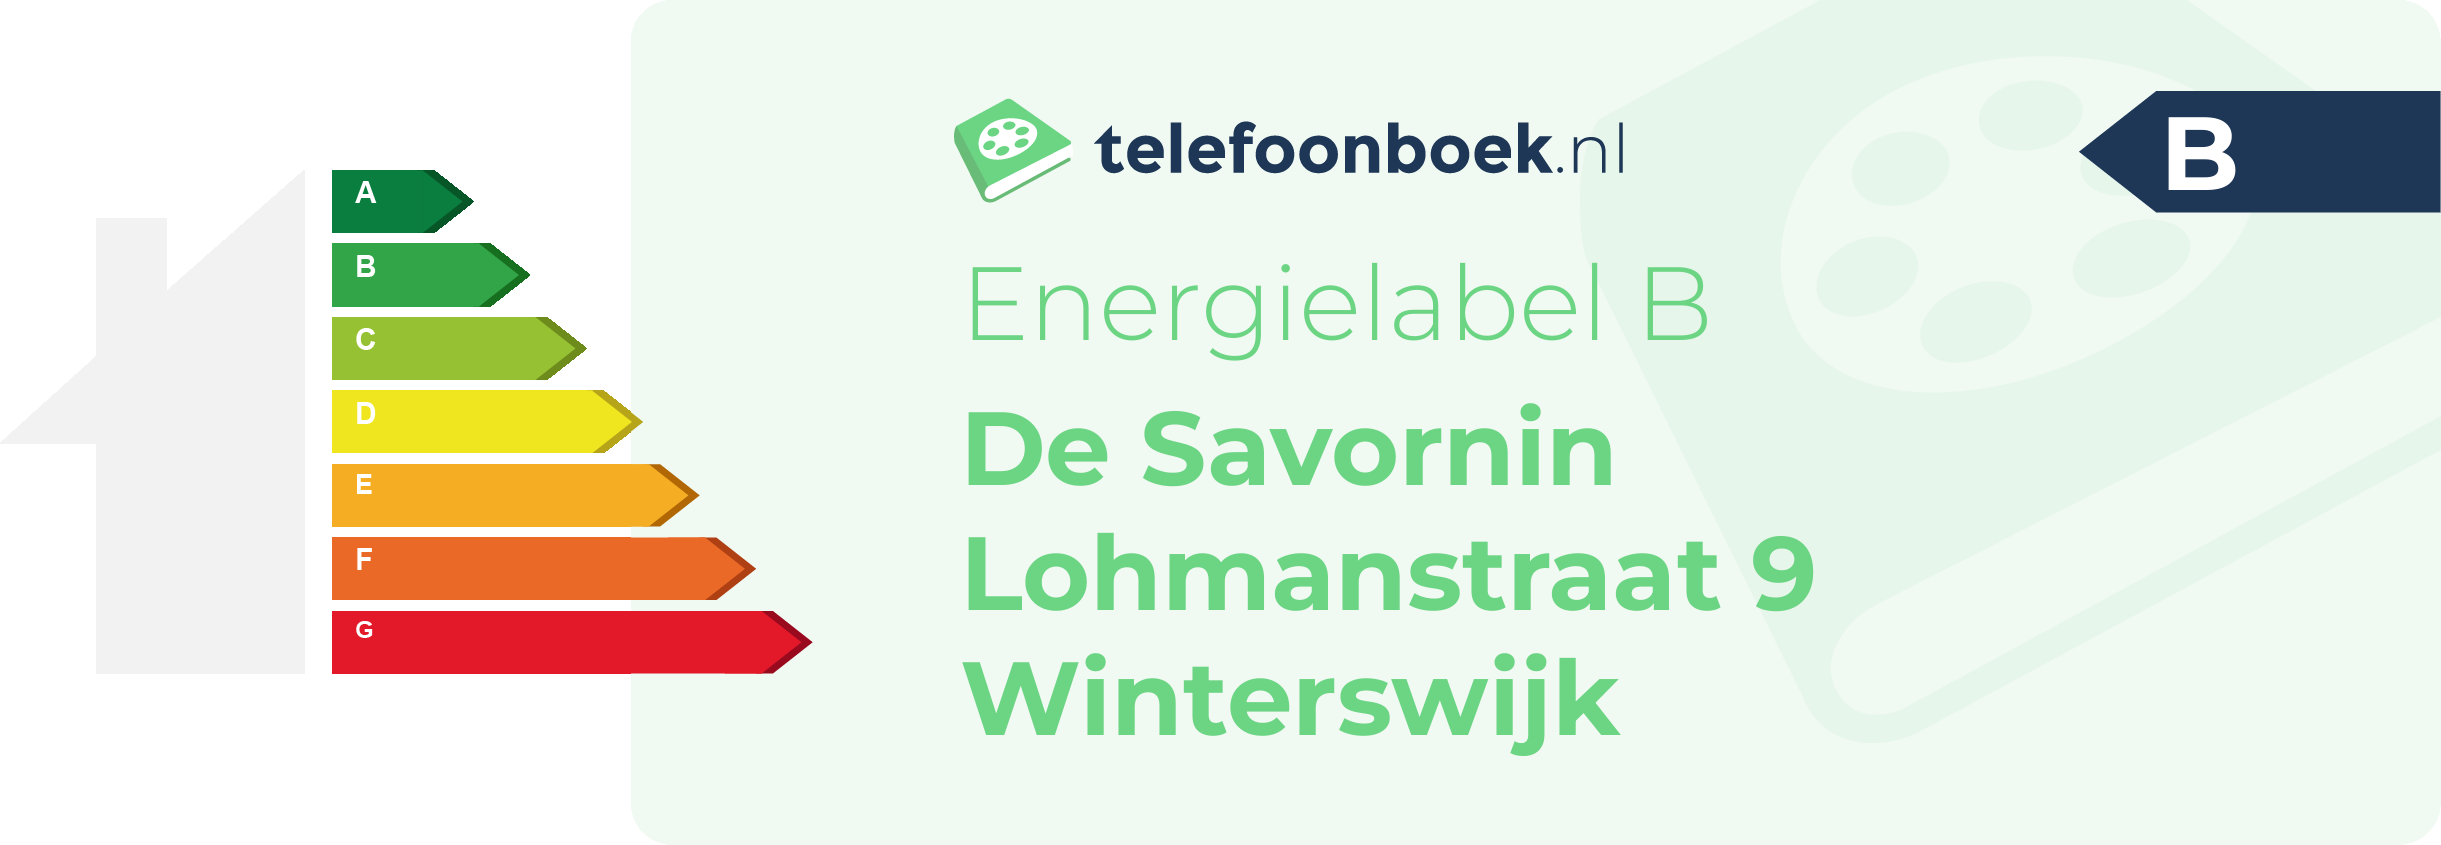 Energielabel De Savornin Lohmanstraat 9 Winterswijk